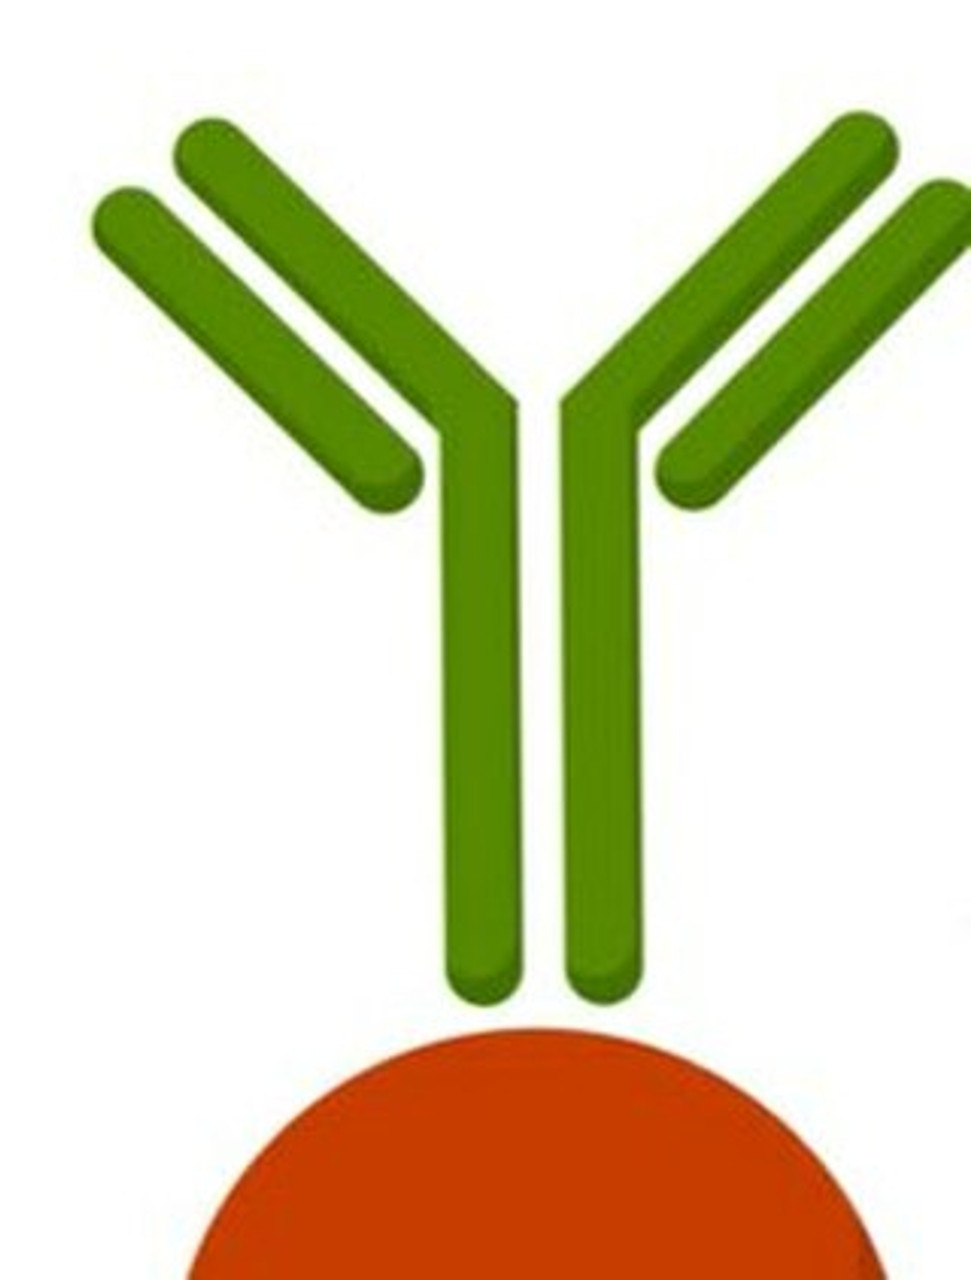 USP36 Antibody